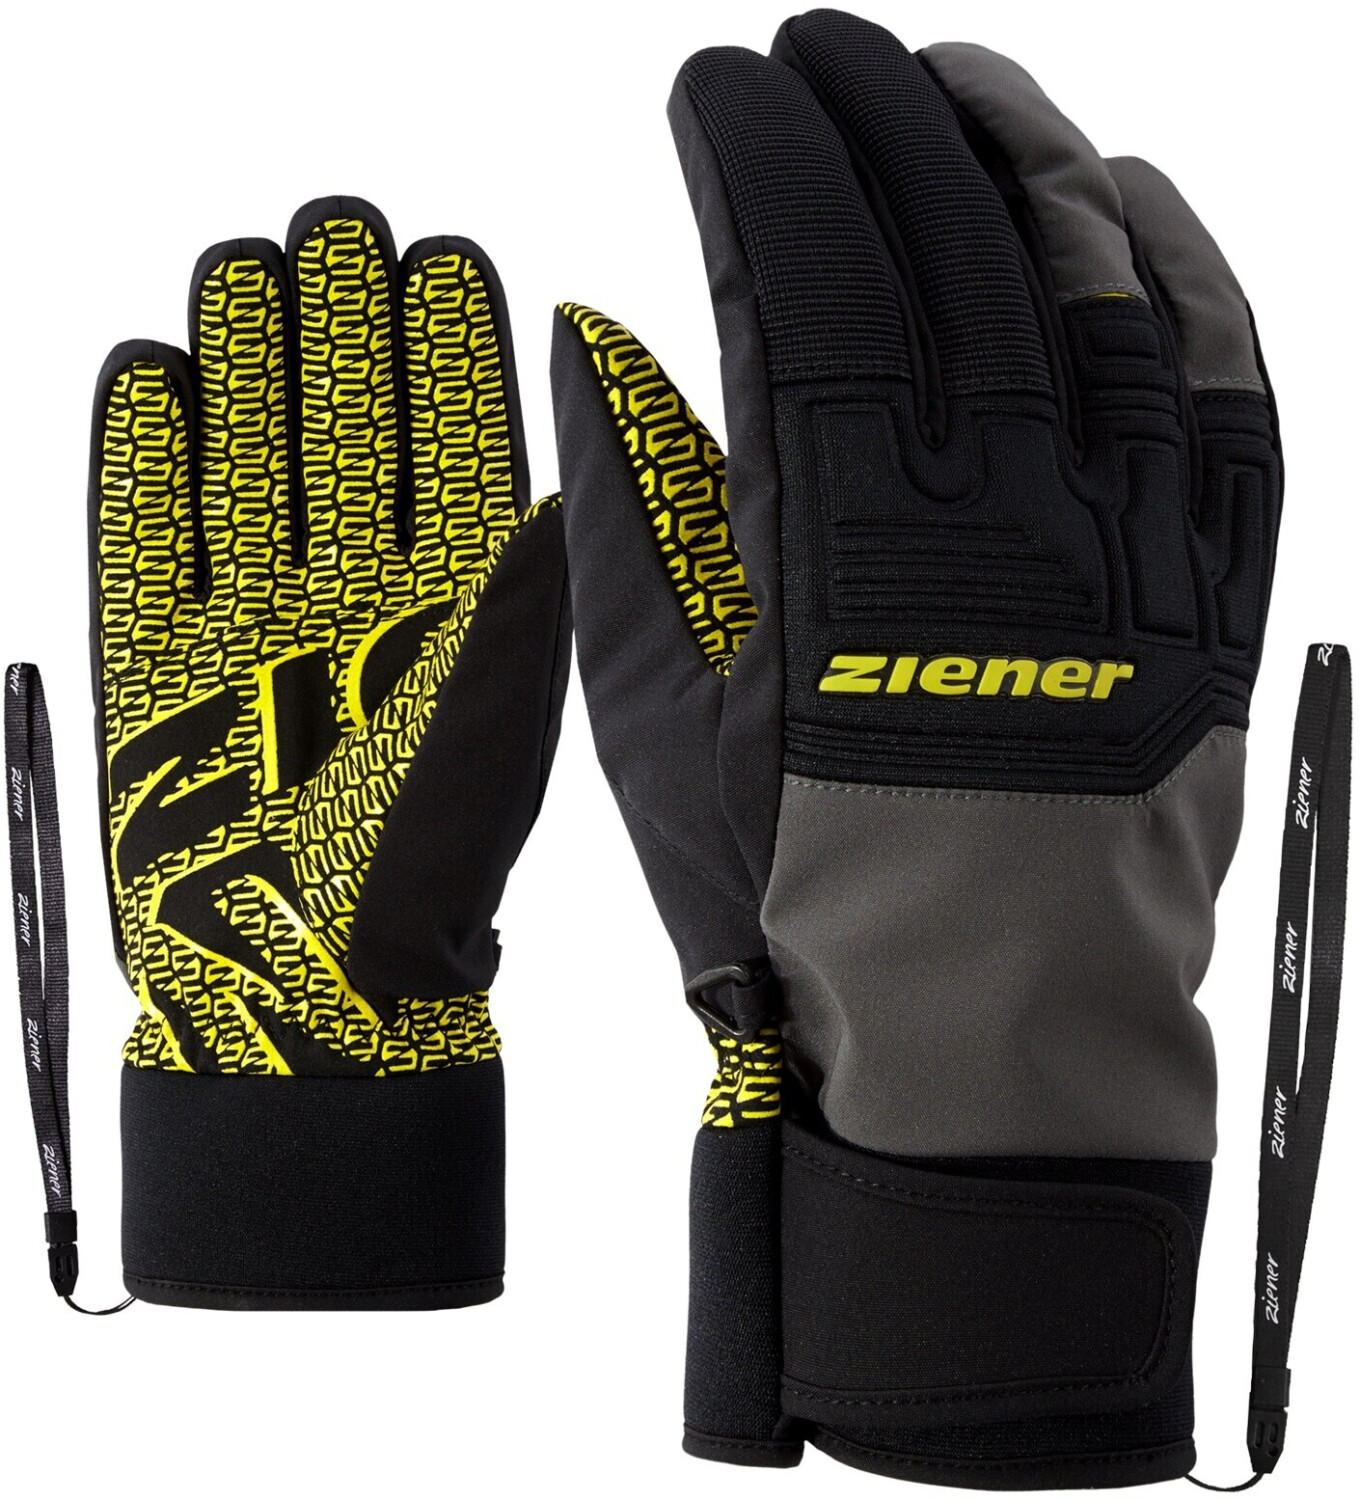 Ziener Garim AS Glove Ski Alpine magnet - Angebote ab 44,90 €